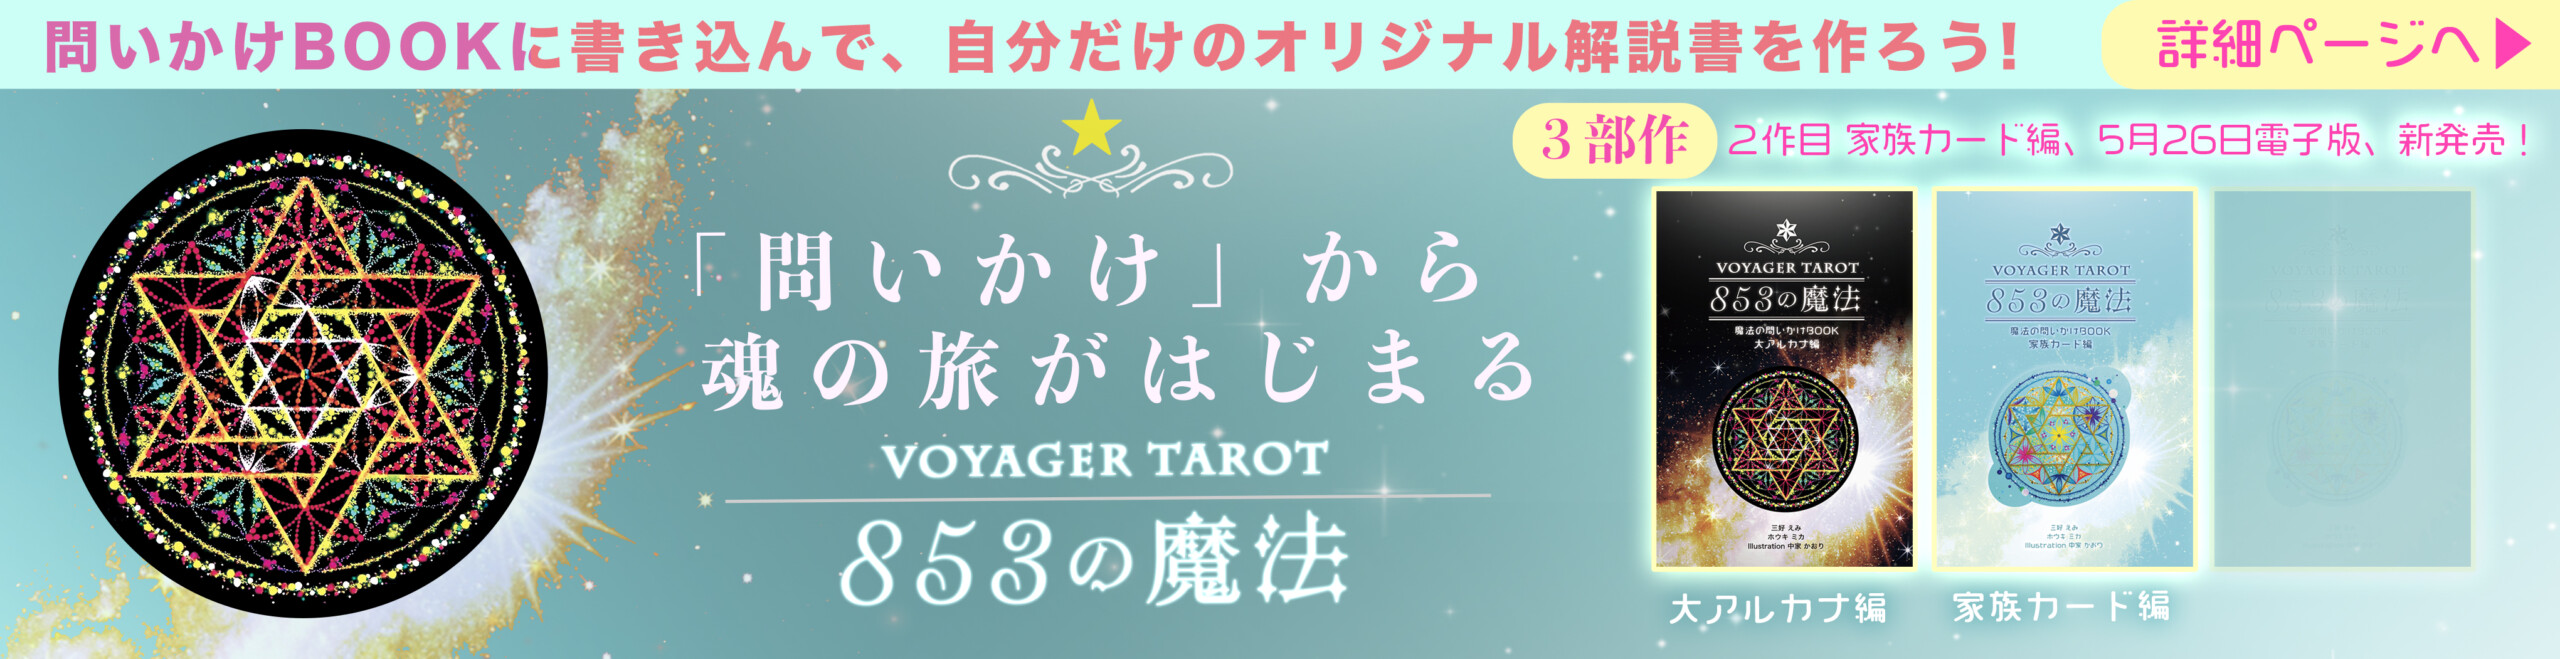 ログインページ – ボイジャータロットジャパン│VOYAGER TAROT JAPAN